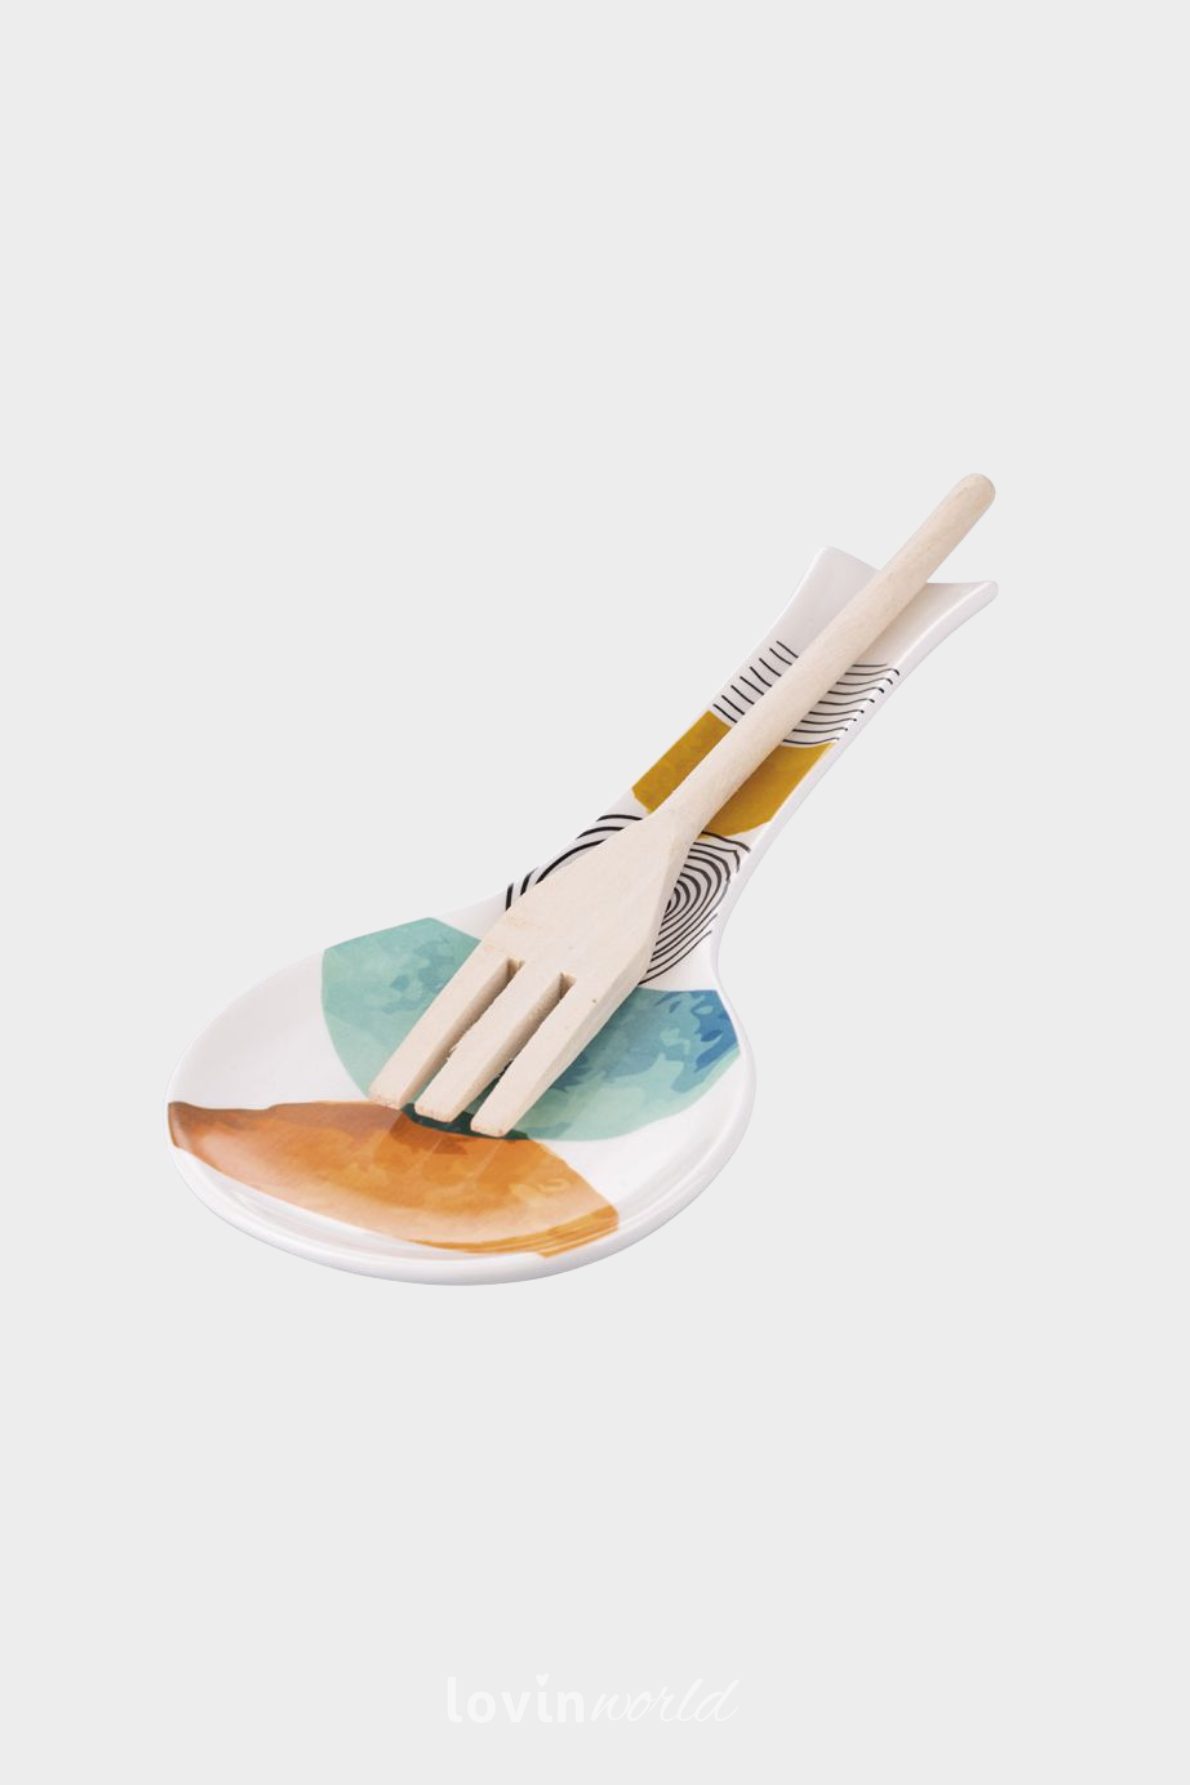 Poggiamestolo in ceramica Venice Lido, multicolore-2